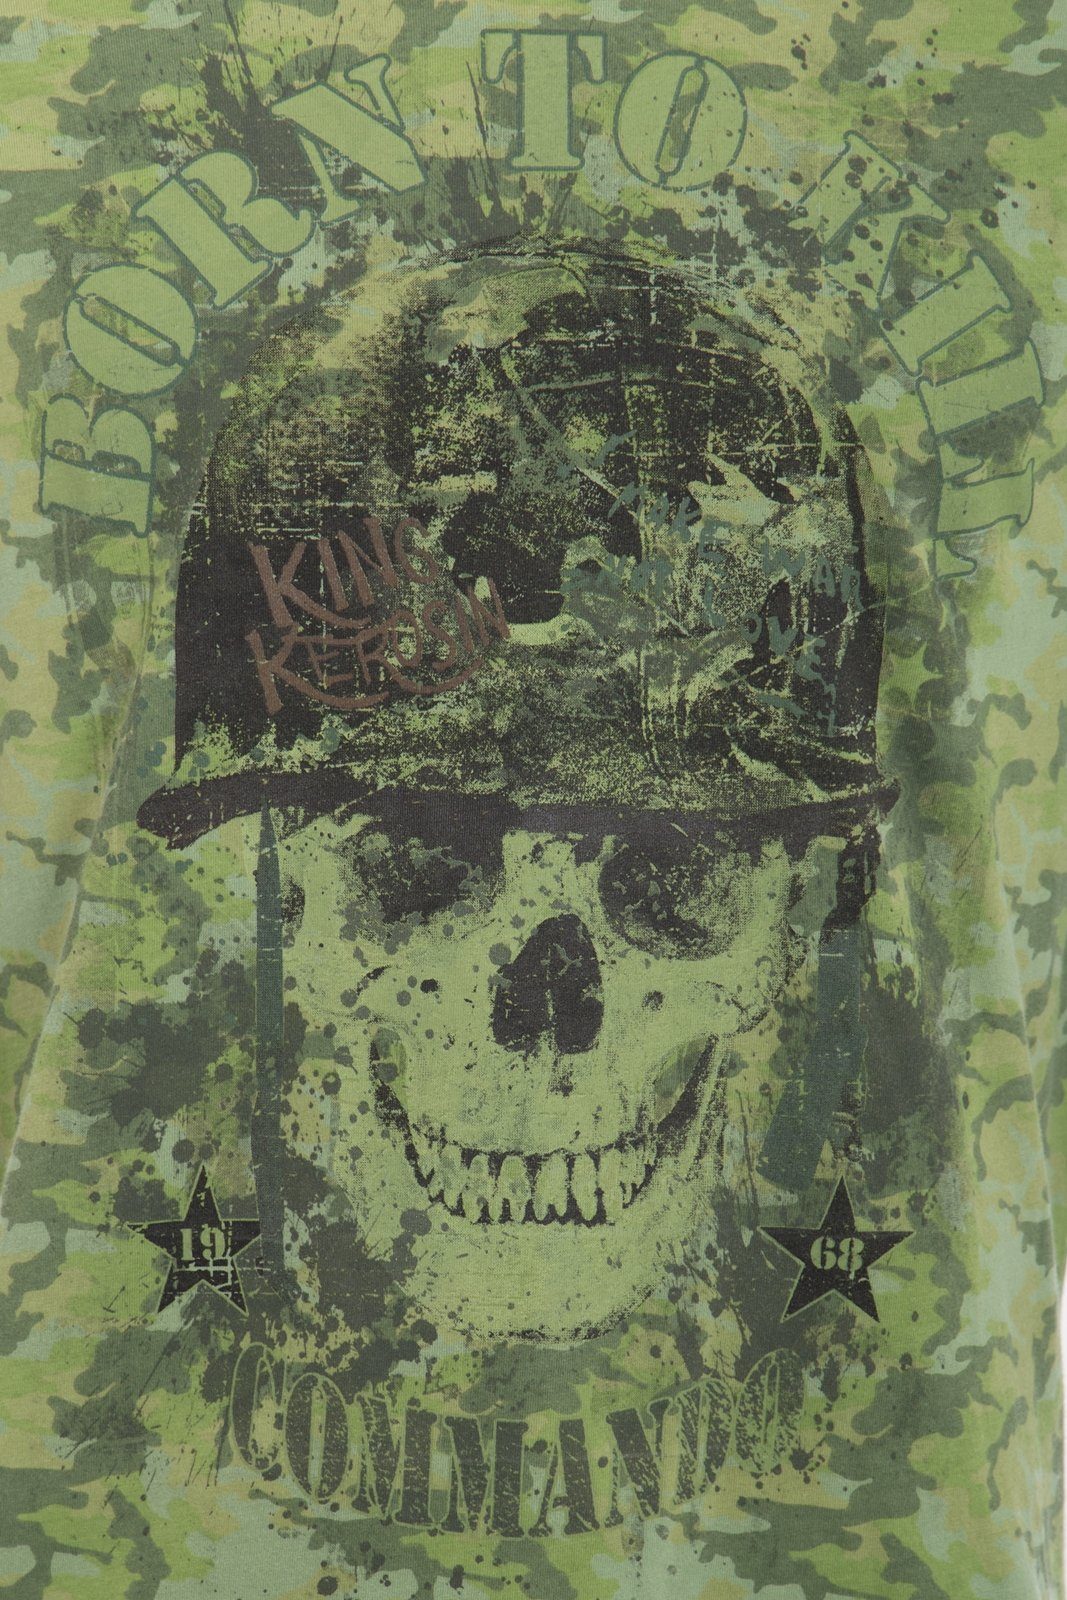 born to Evergreen Tarn-Alloverprint T-Shirt und mit KingKerosin kill Skull-Motiv